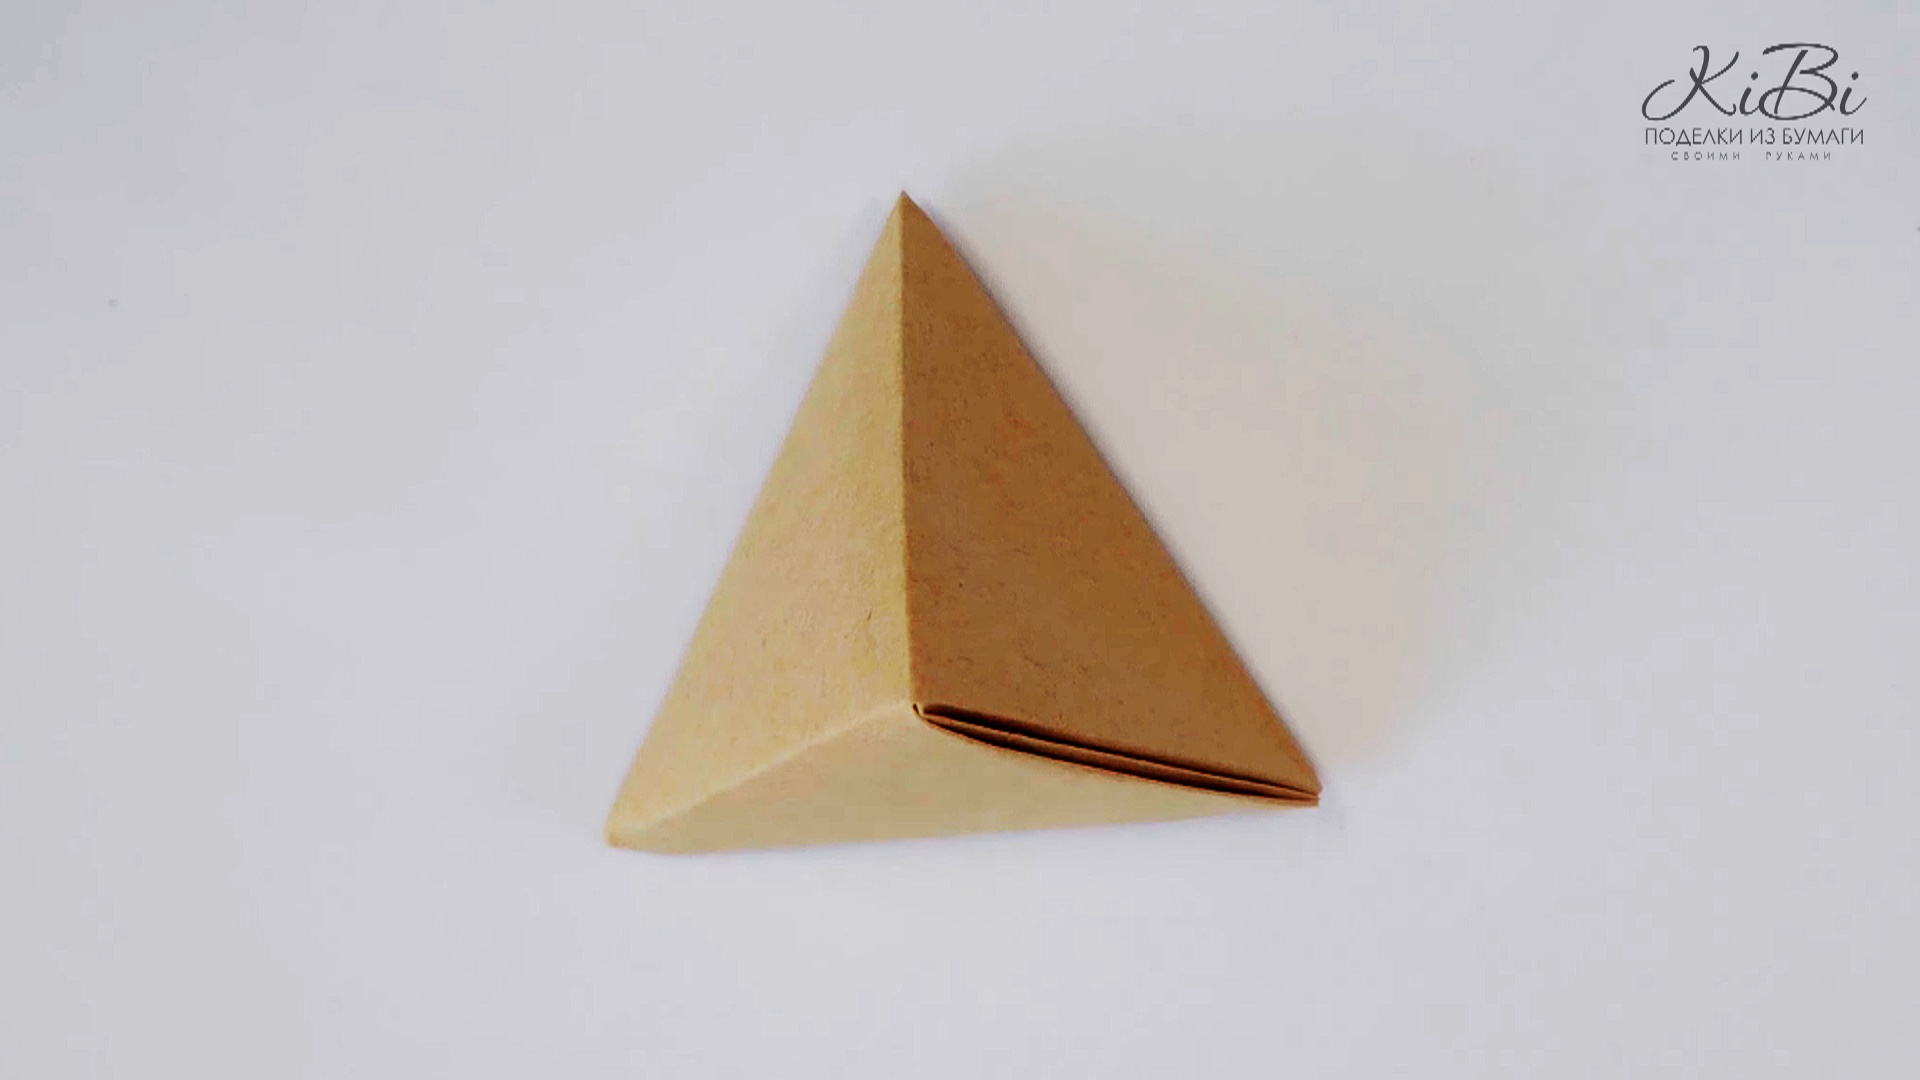 Оригами Правильный Тетраэдр многогранник из бумаги | Поделки из бумаги своими руками | DIY